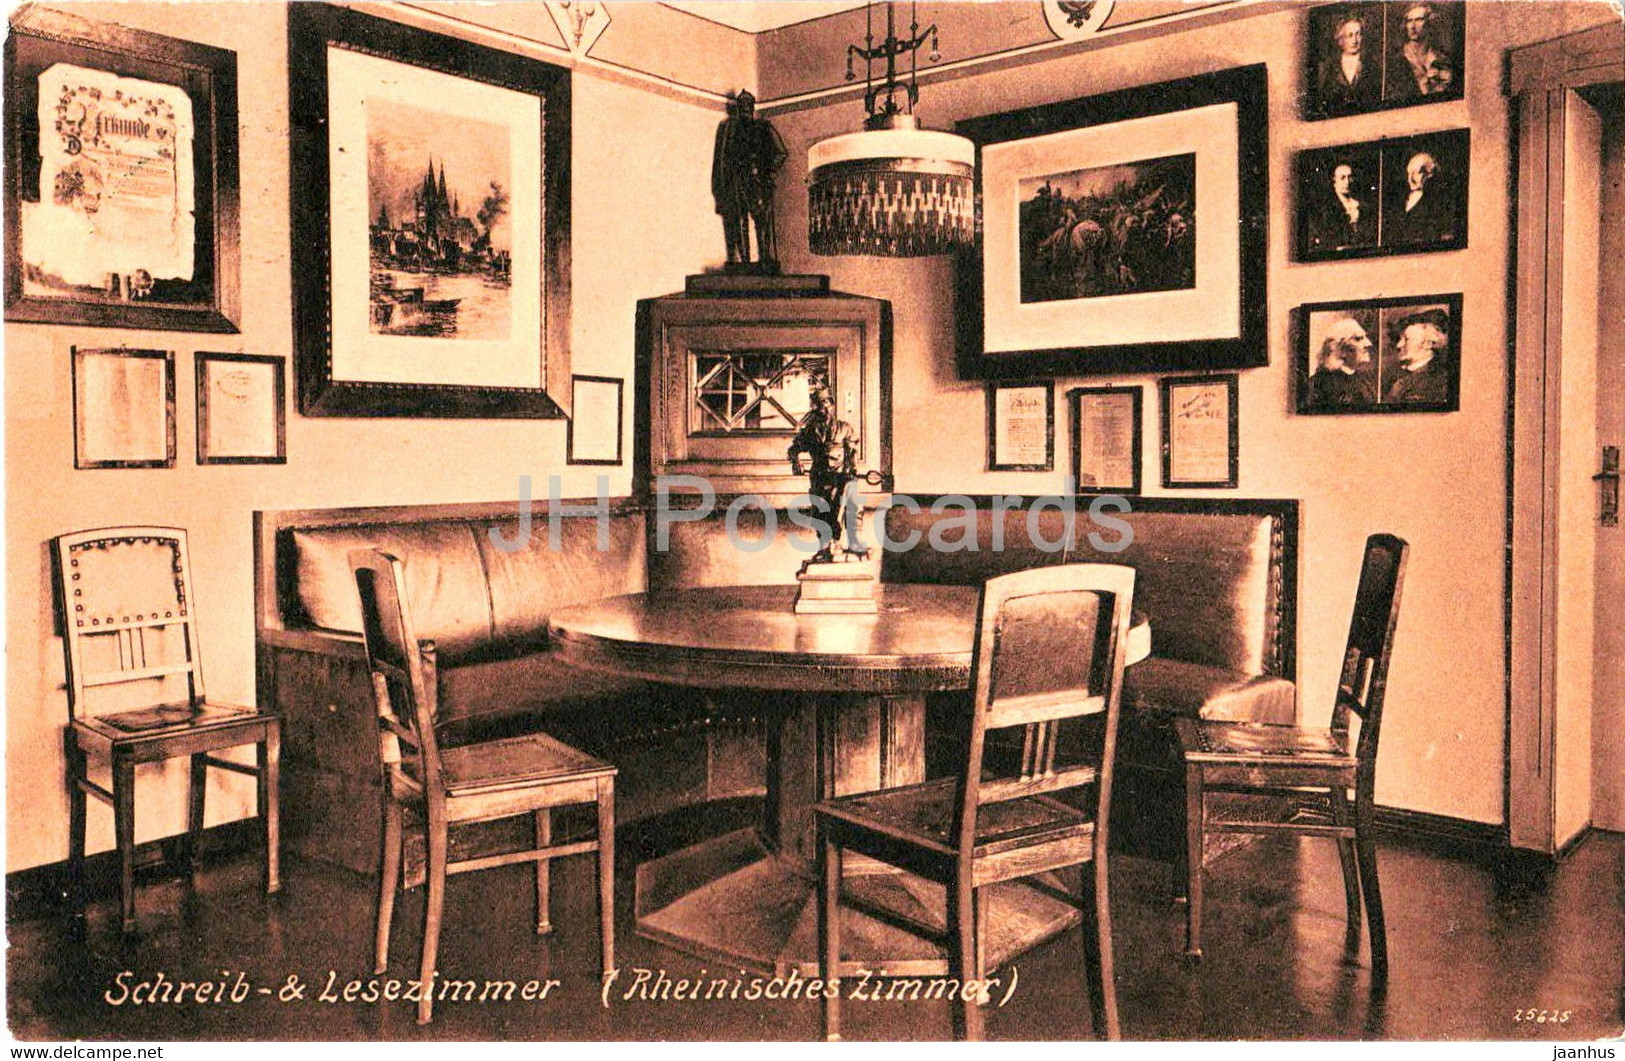 Schreib Lesezimmer - Sondershausen - Erholungsheim Des Techniker Verbandes - Old Postcard - 1913 - Germany - Used - Sondershausen